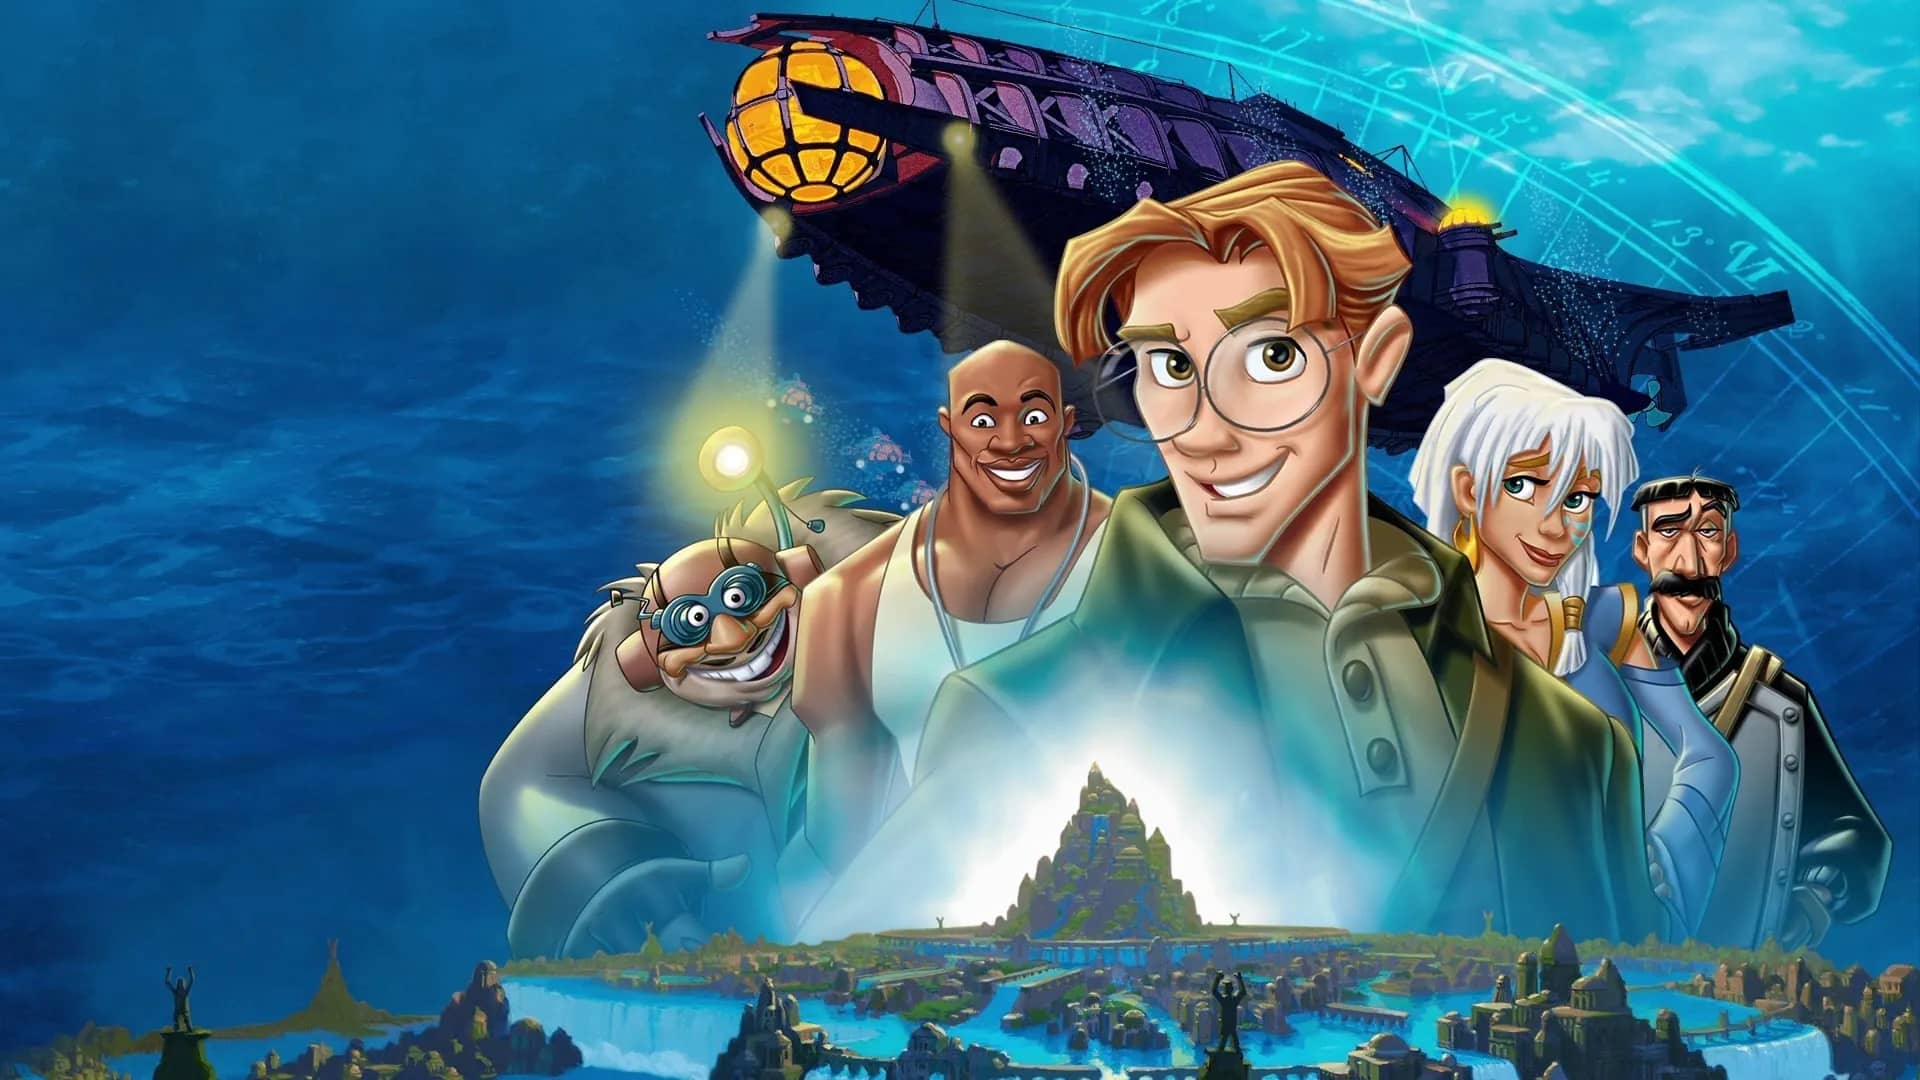 Imagen promocional de Atlantis con los personajes de animación en el fondo del mar junto a un submairno